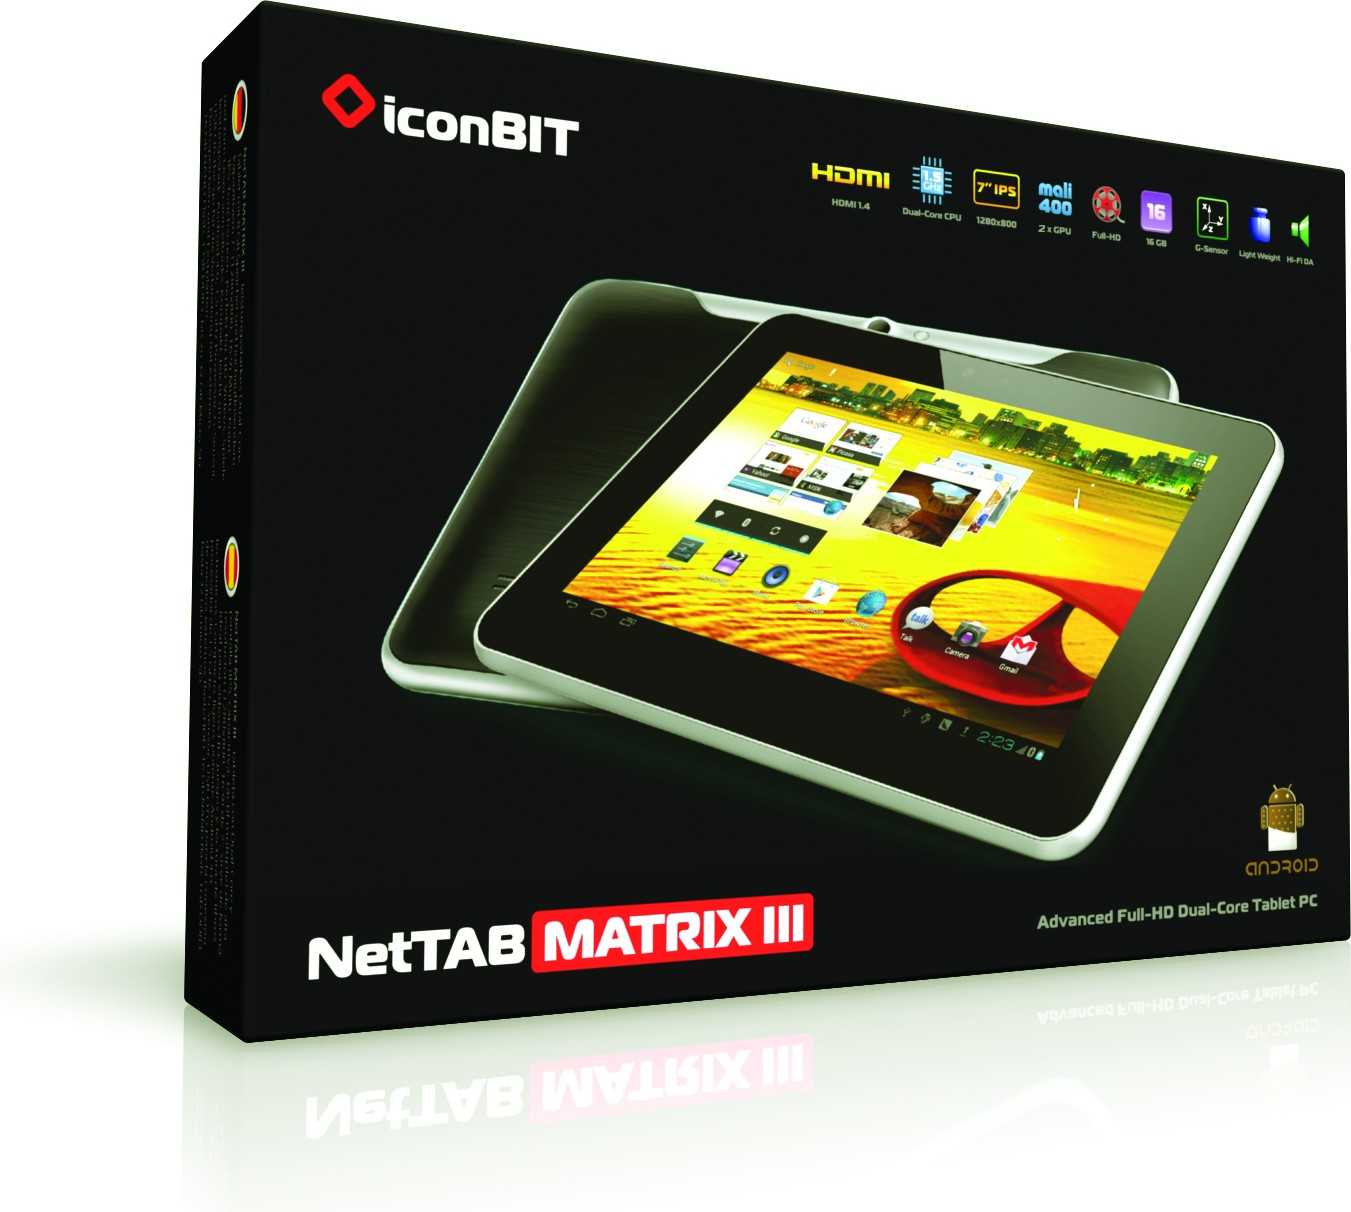 Замена экрана планшета iconbit nettab matrix ultra — купить, цена и характеристики, отзывы